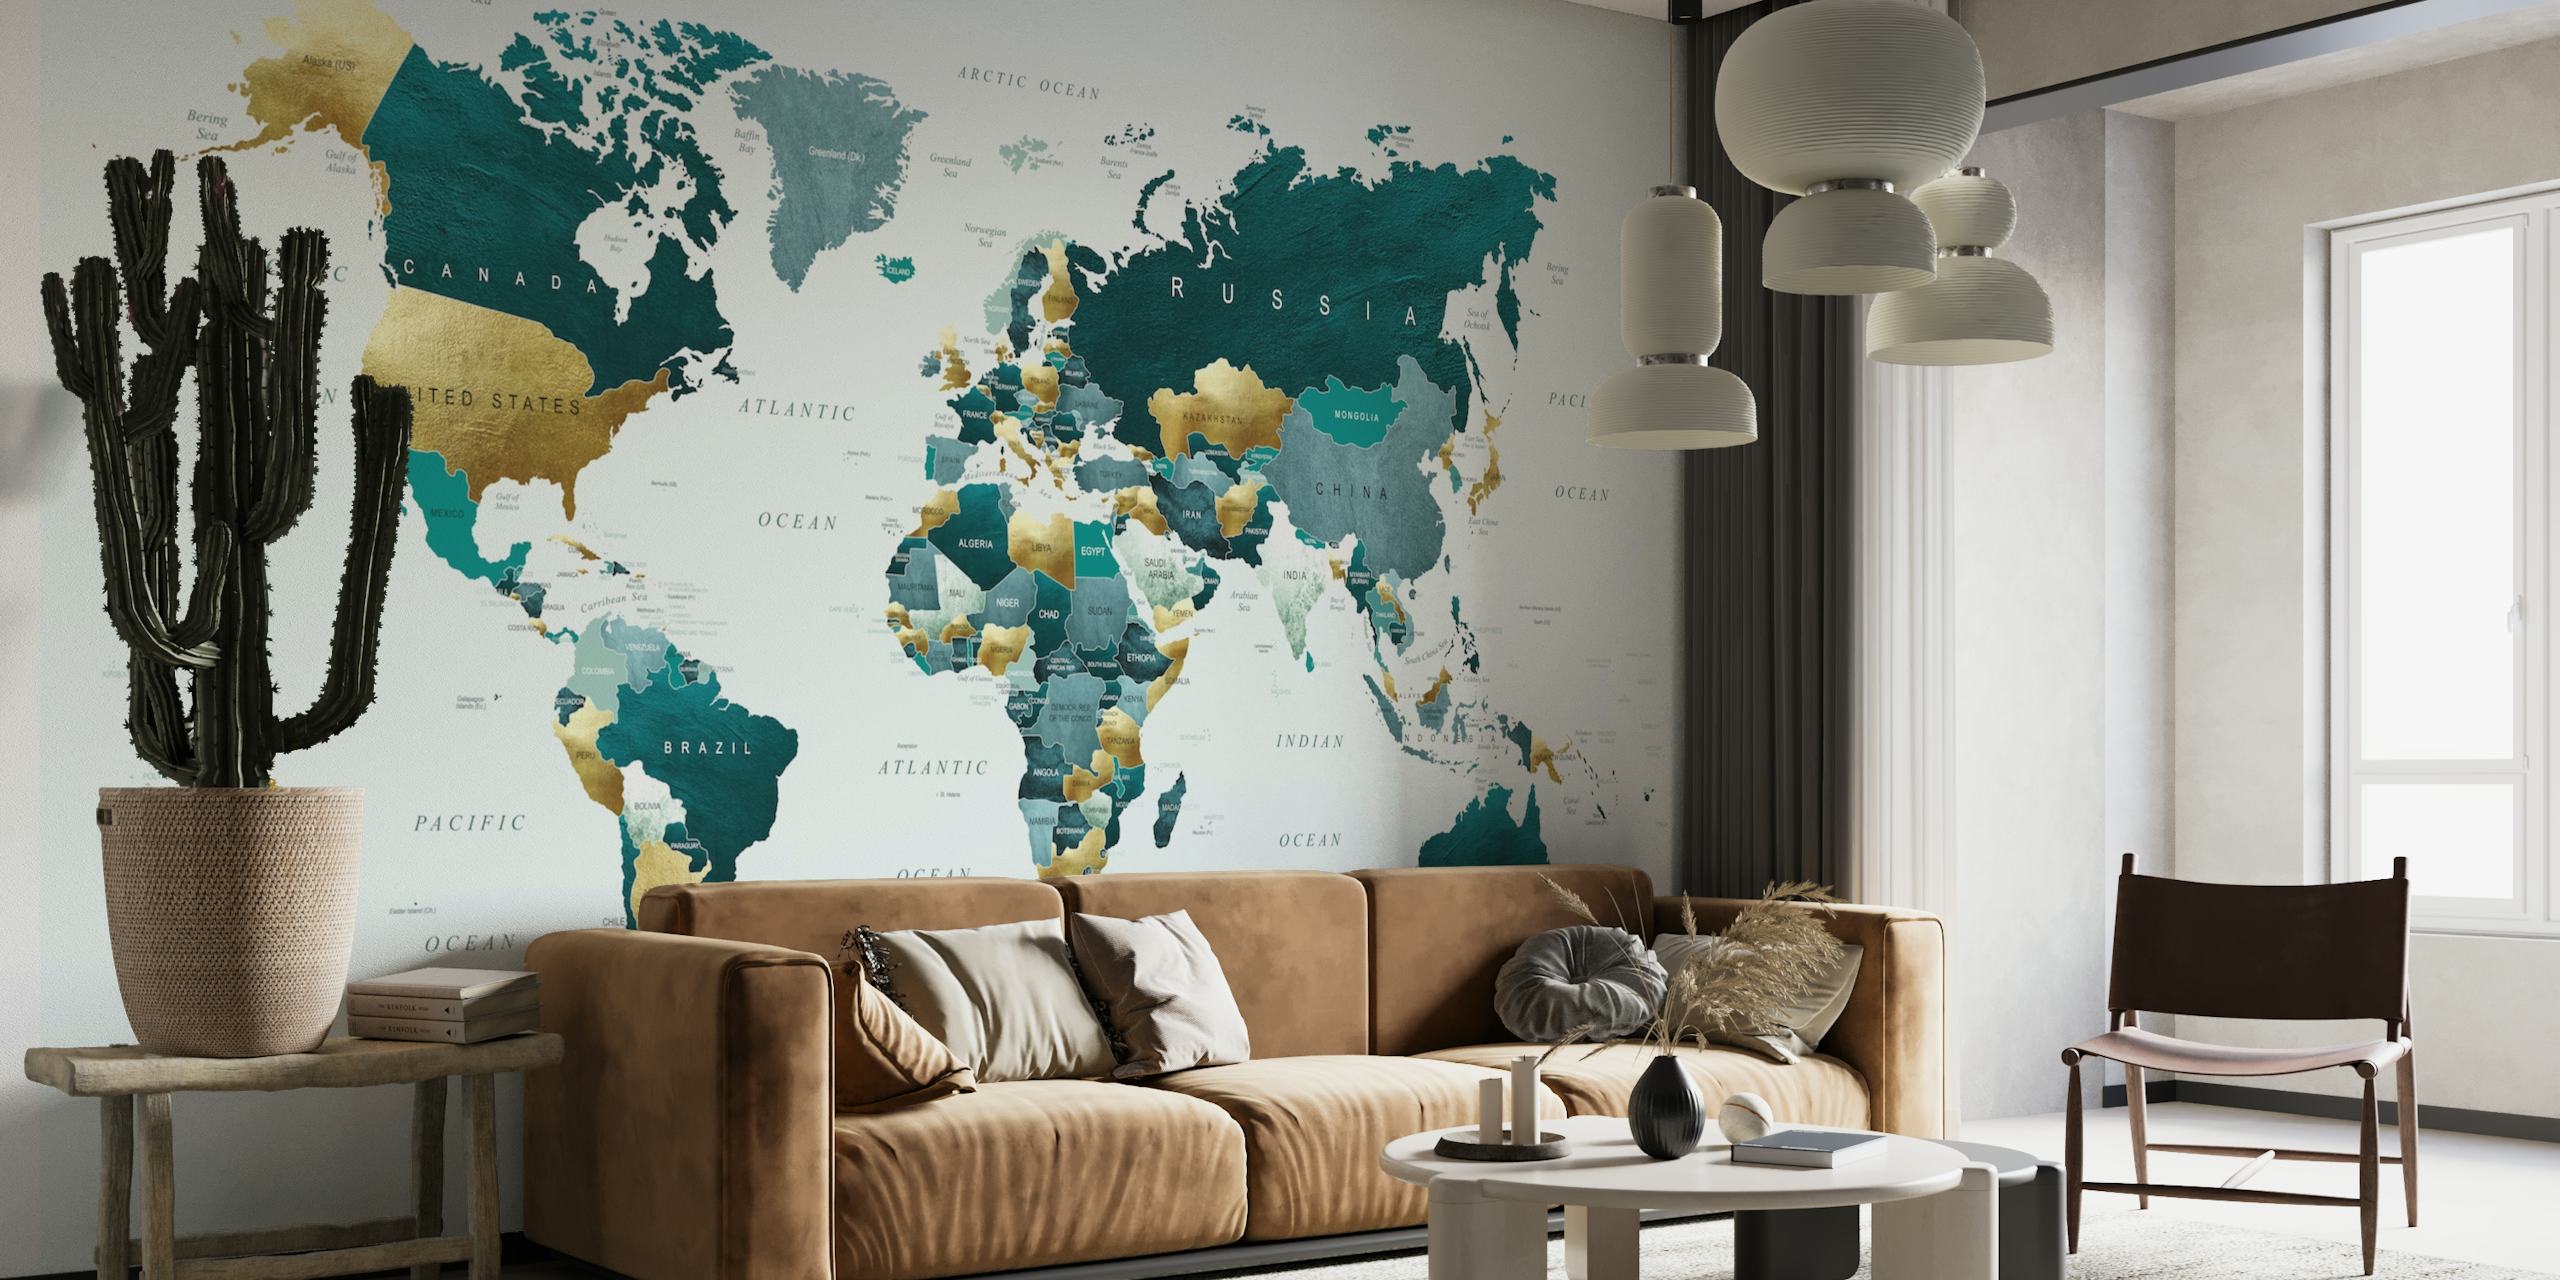 Fototapete „World Map Teal Gold“ mit modernen Blaugrün- und Goldtönen.